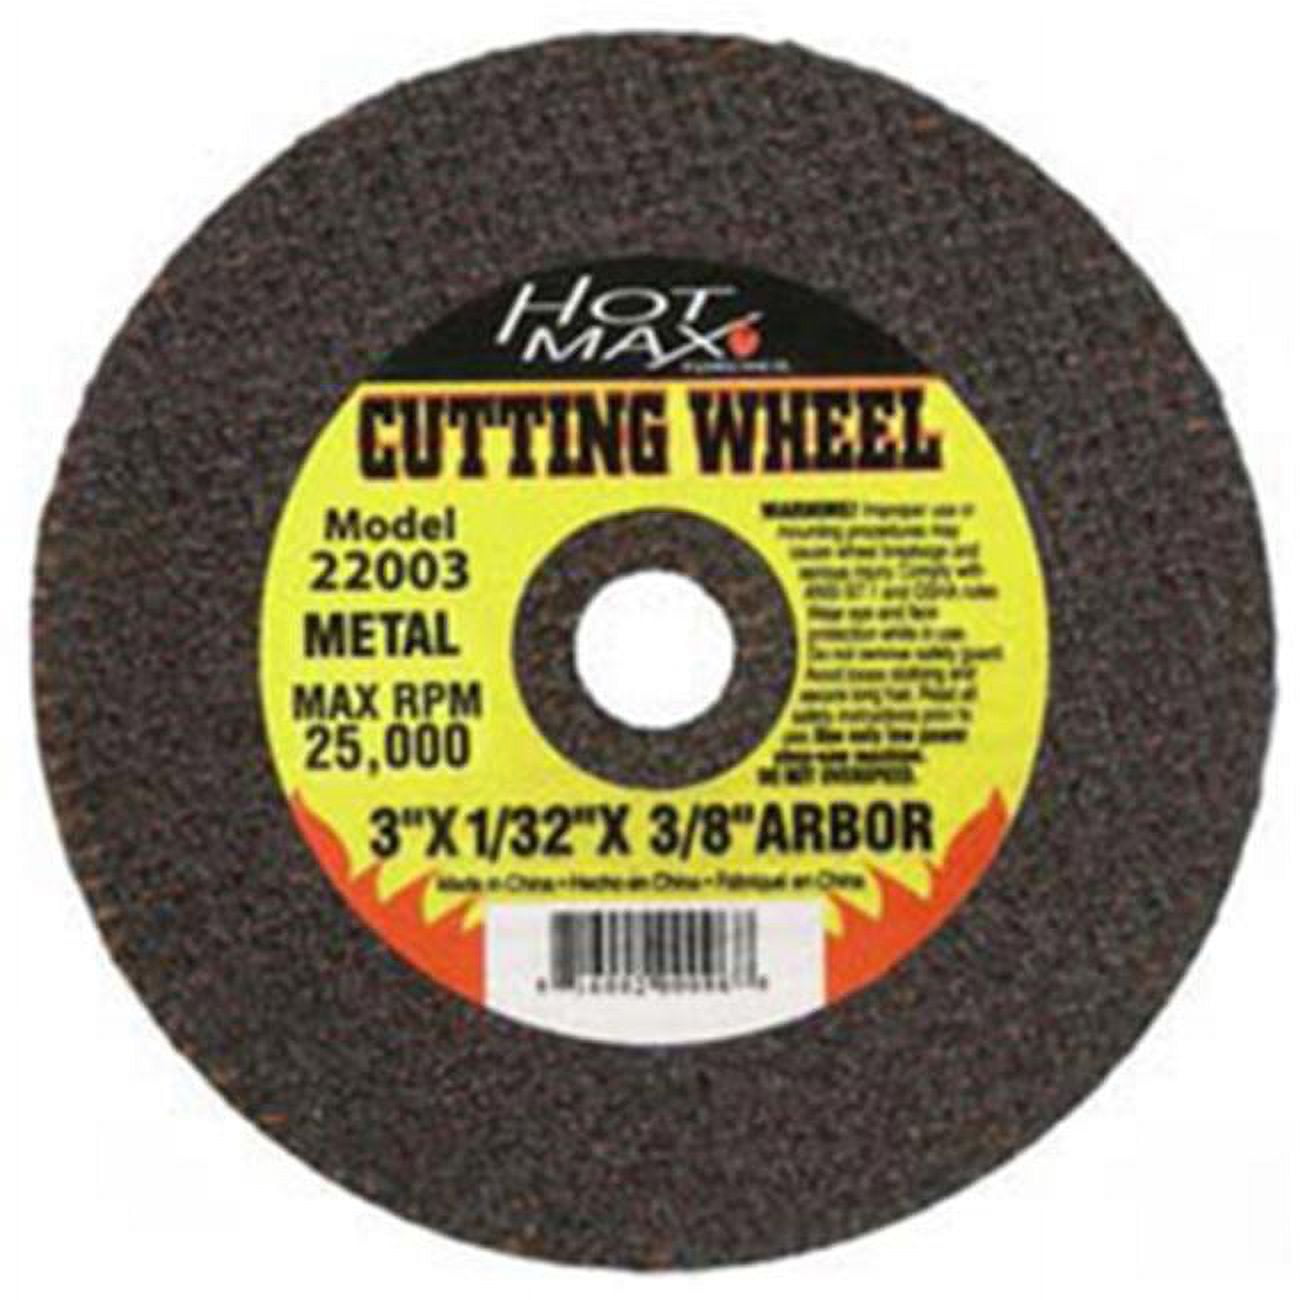 22005 4 X 0.06 In. Cut-off Wheel